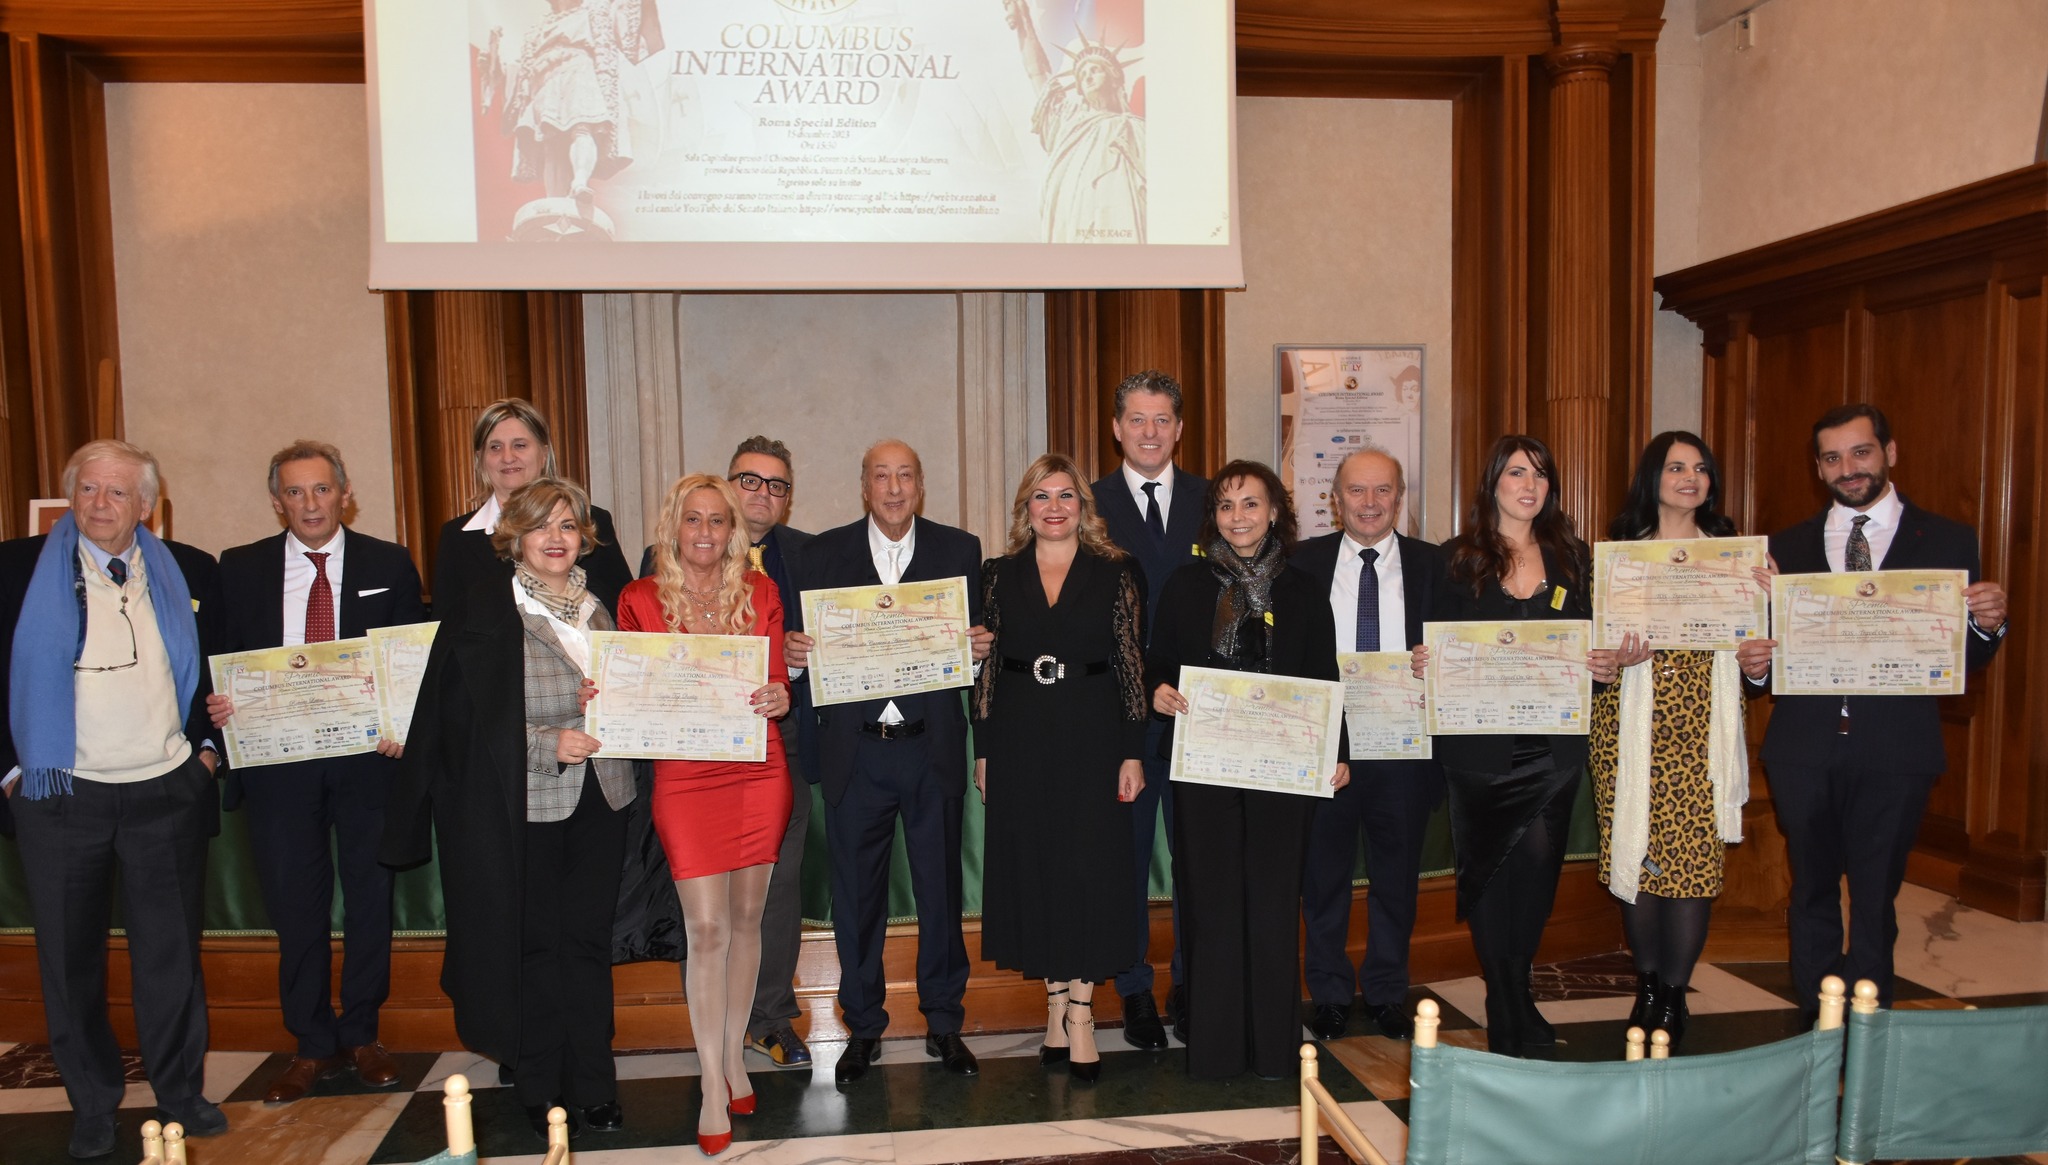 Nazionali. Roma: Columbus International Award, un successo la 4a edizione nella sala Capitolare del Senato 